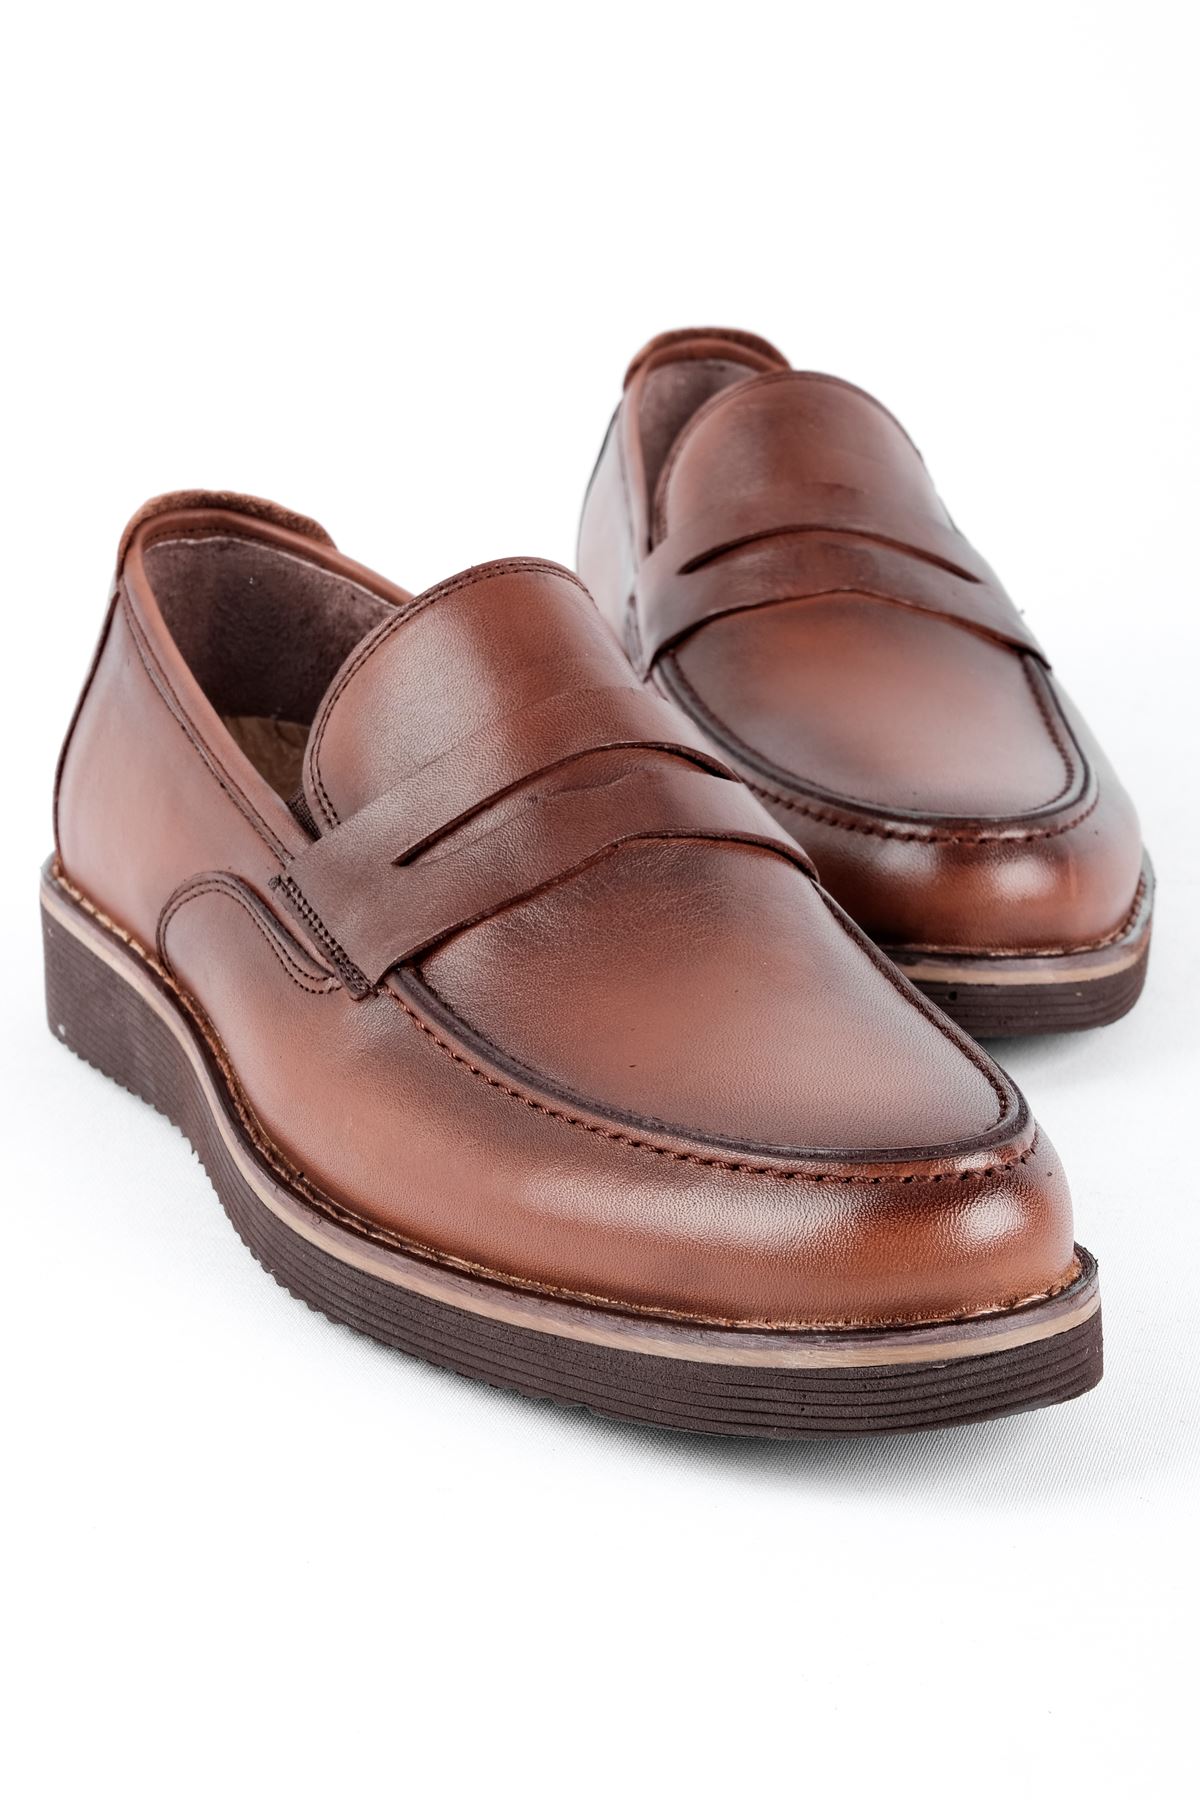 James Erkek Hakiki Deri Ayakkabı Klasik-Kahverengi